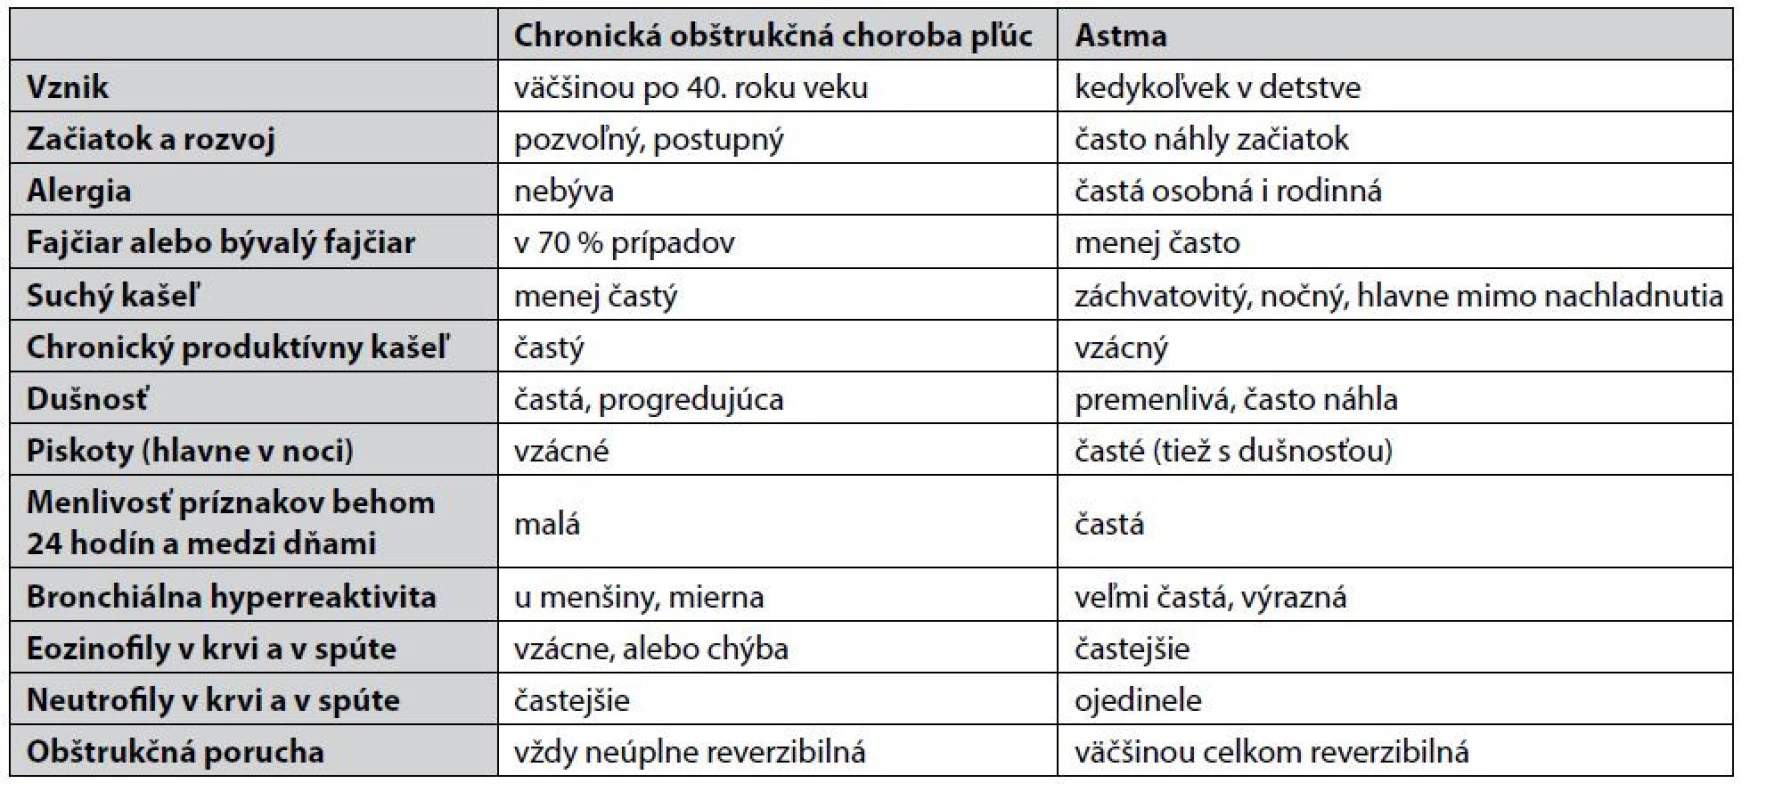 Klinické a laboratórne rozdiely medzi CHOCHP a astmou7)